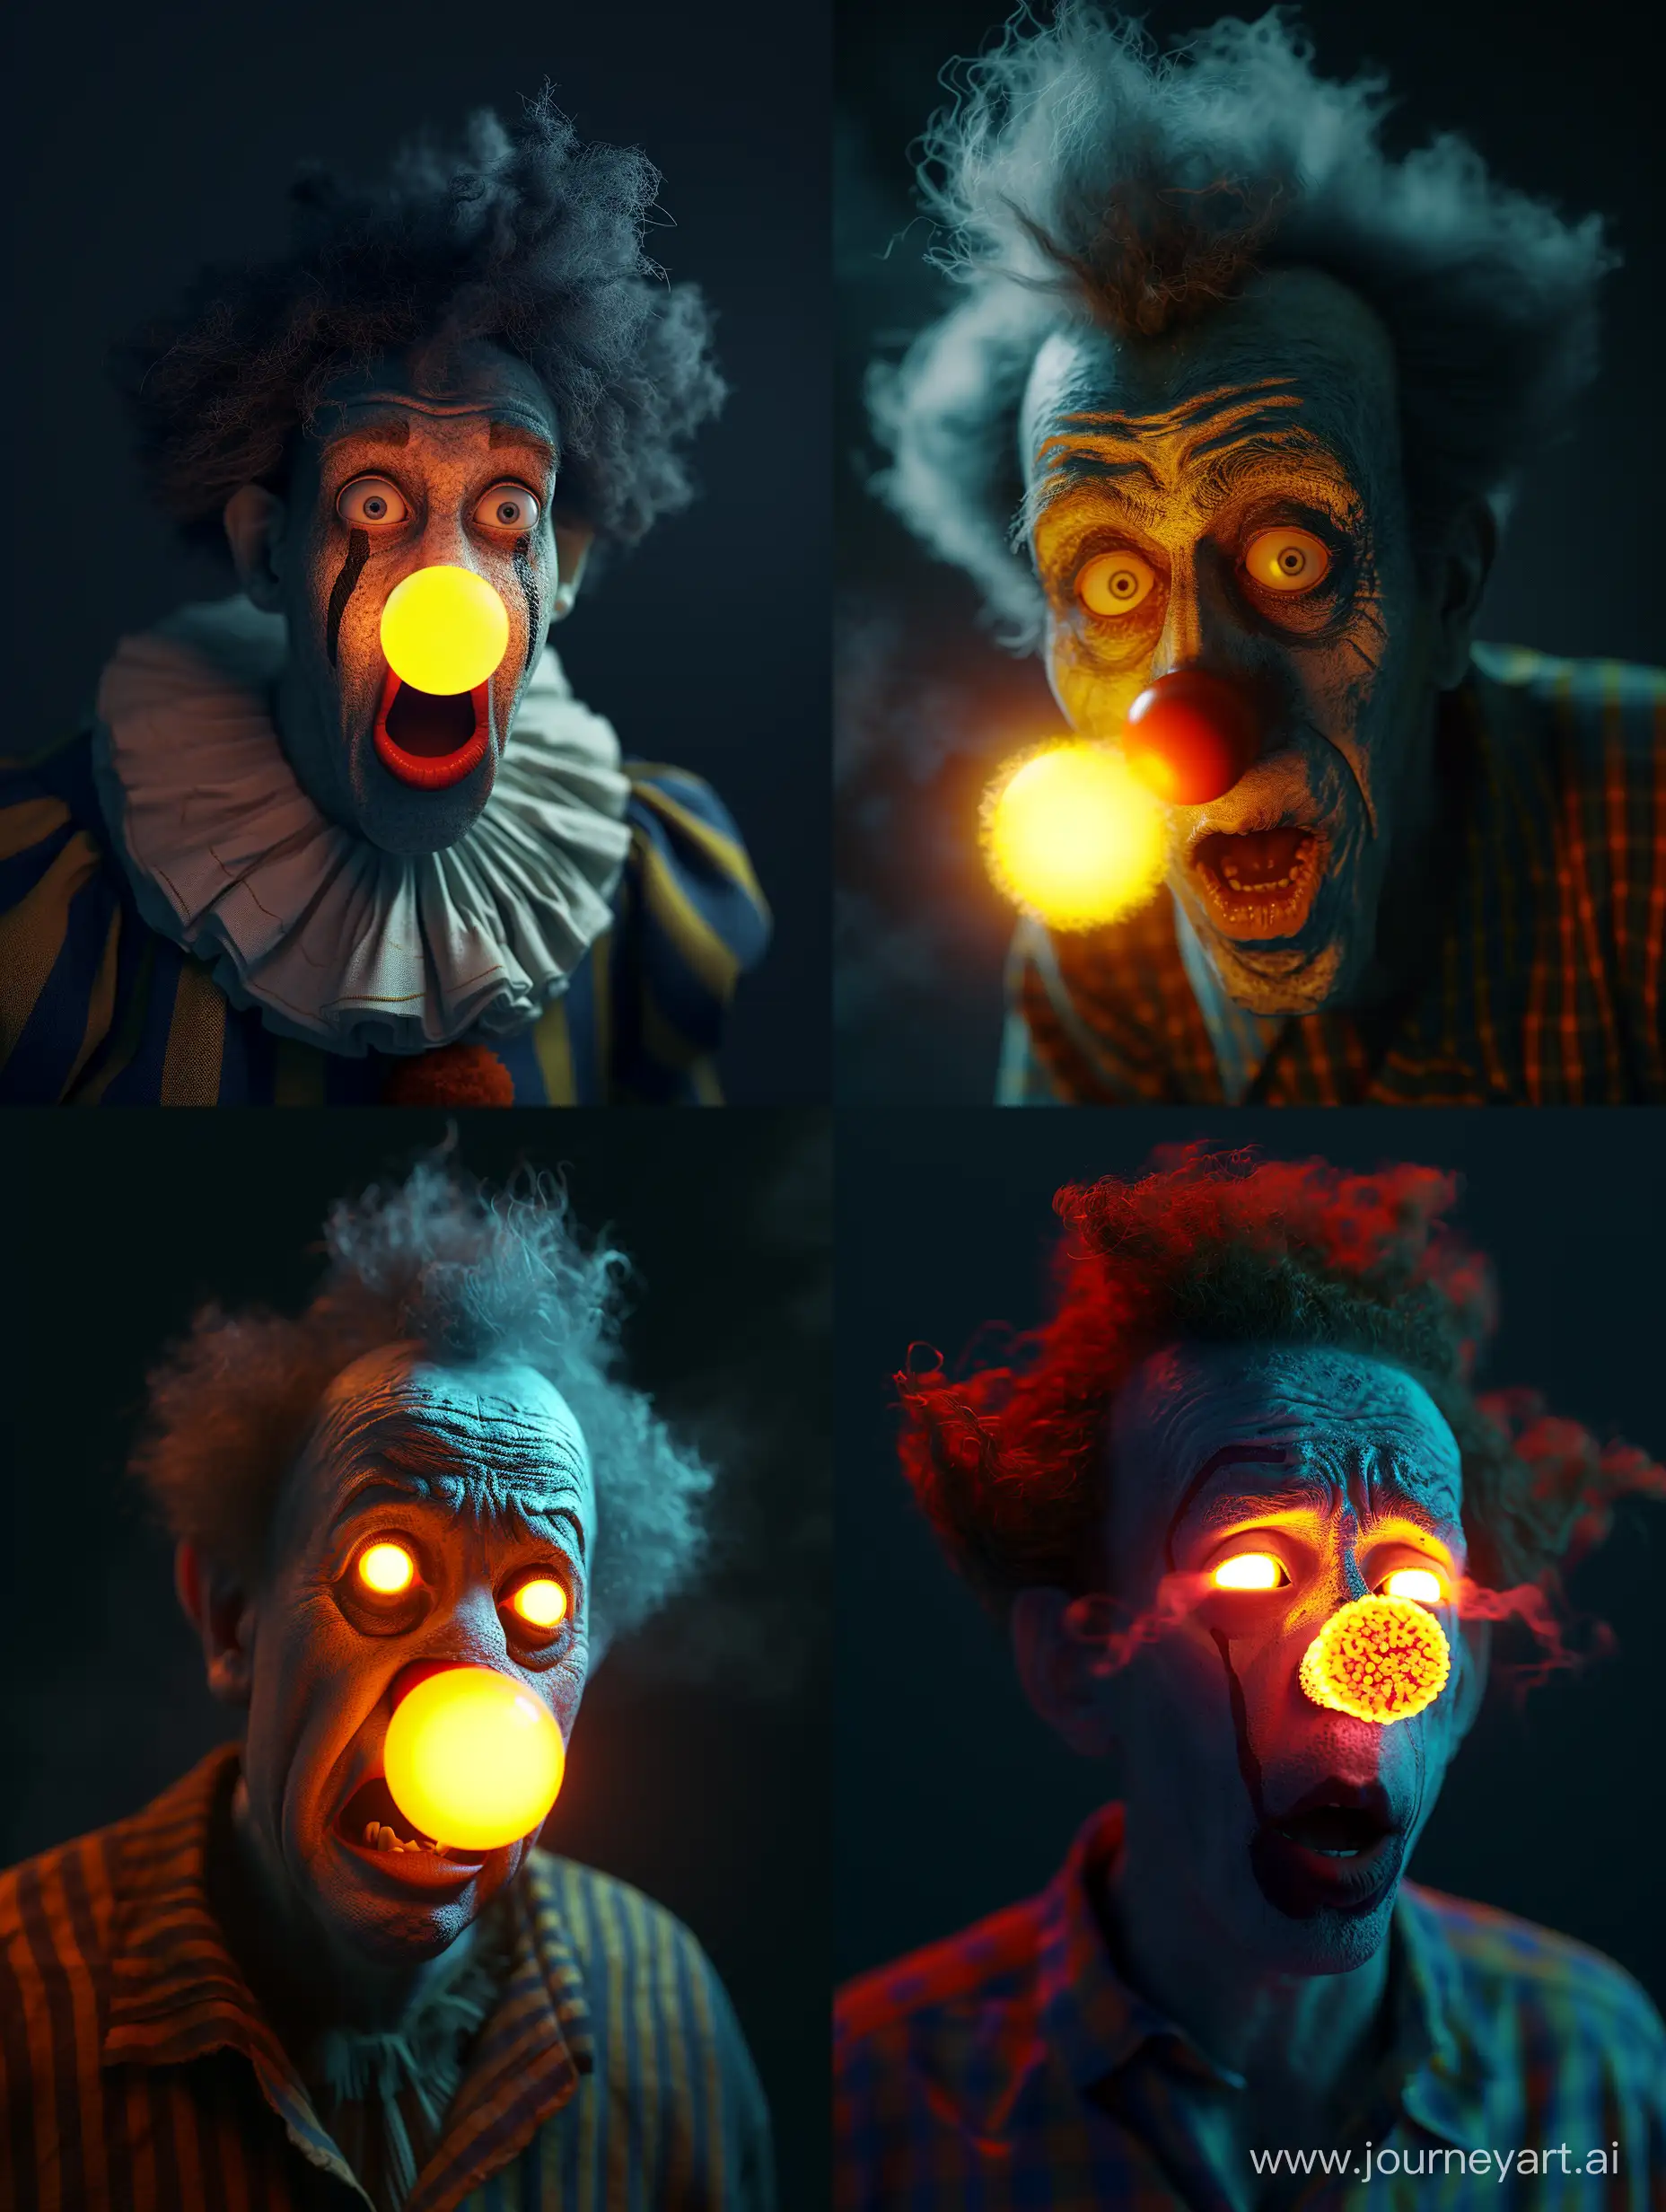 Portrait eines Clowns,mit einer leuchtenden Nase.Er schaut dabei überrascht.Dunkler Hintergrund,8K,3D